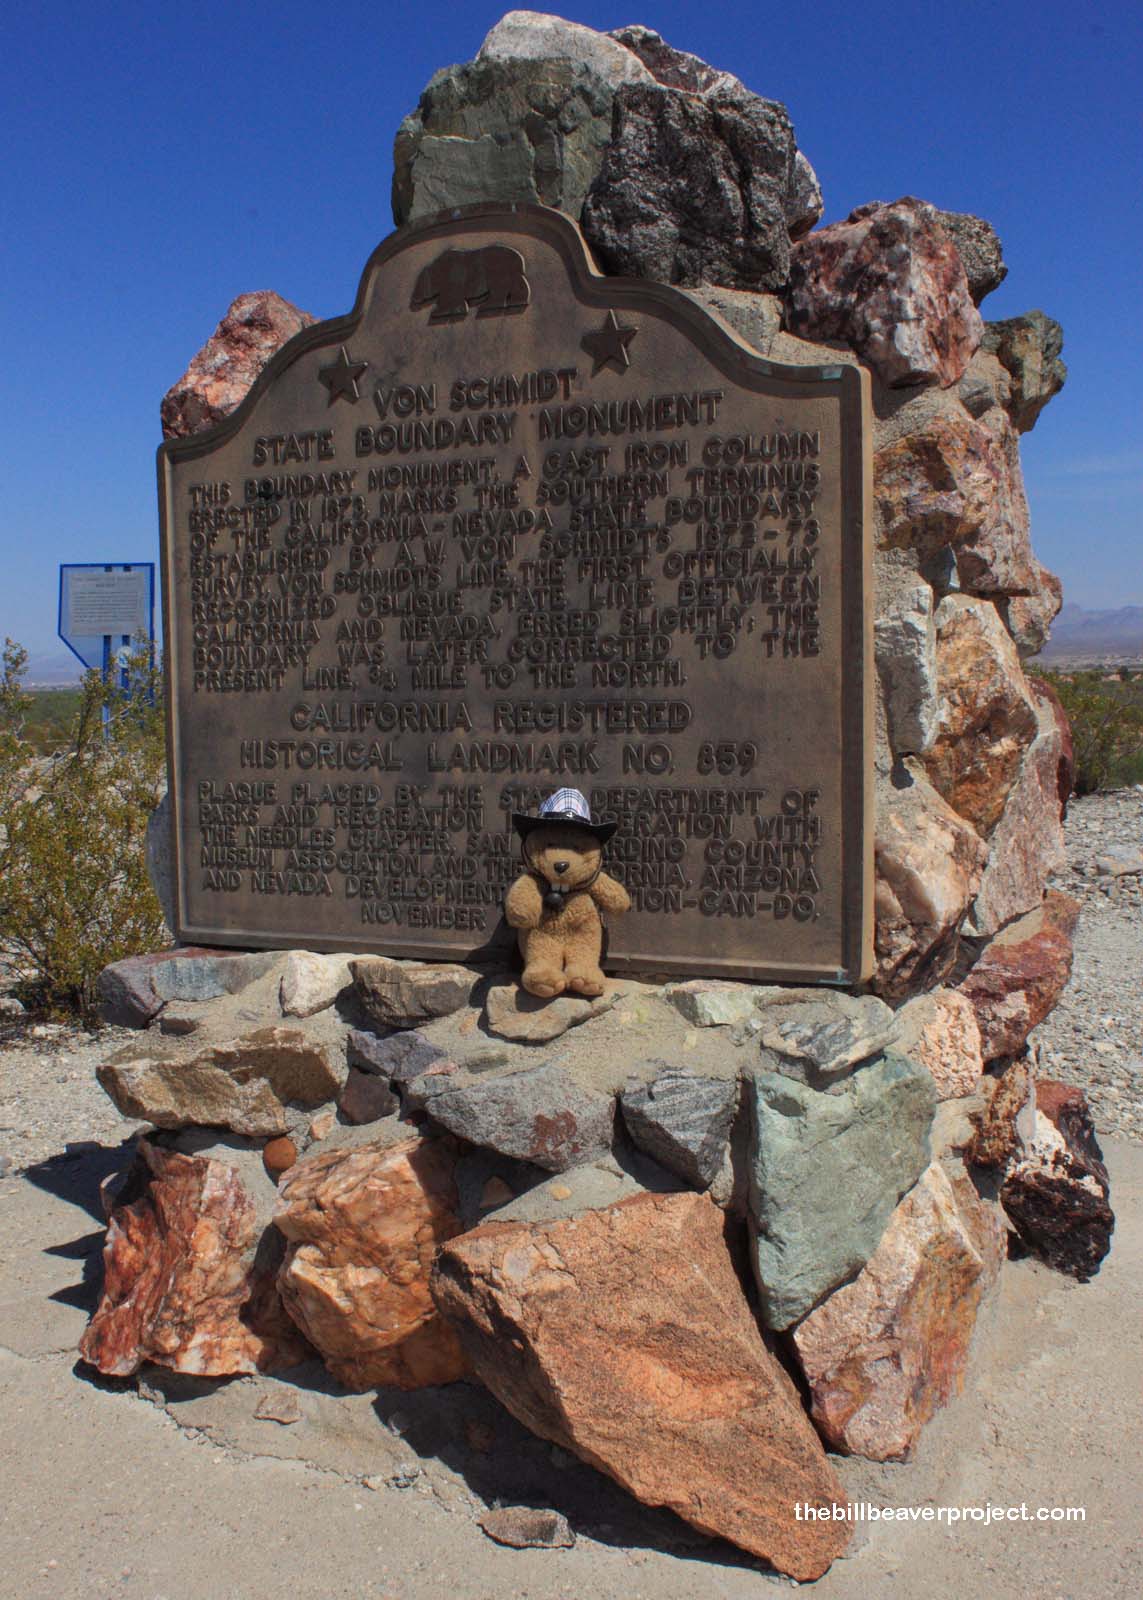 Von Schmidt State Boundary Monument